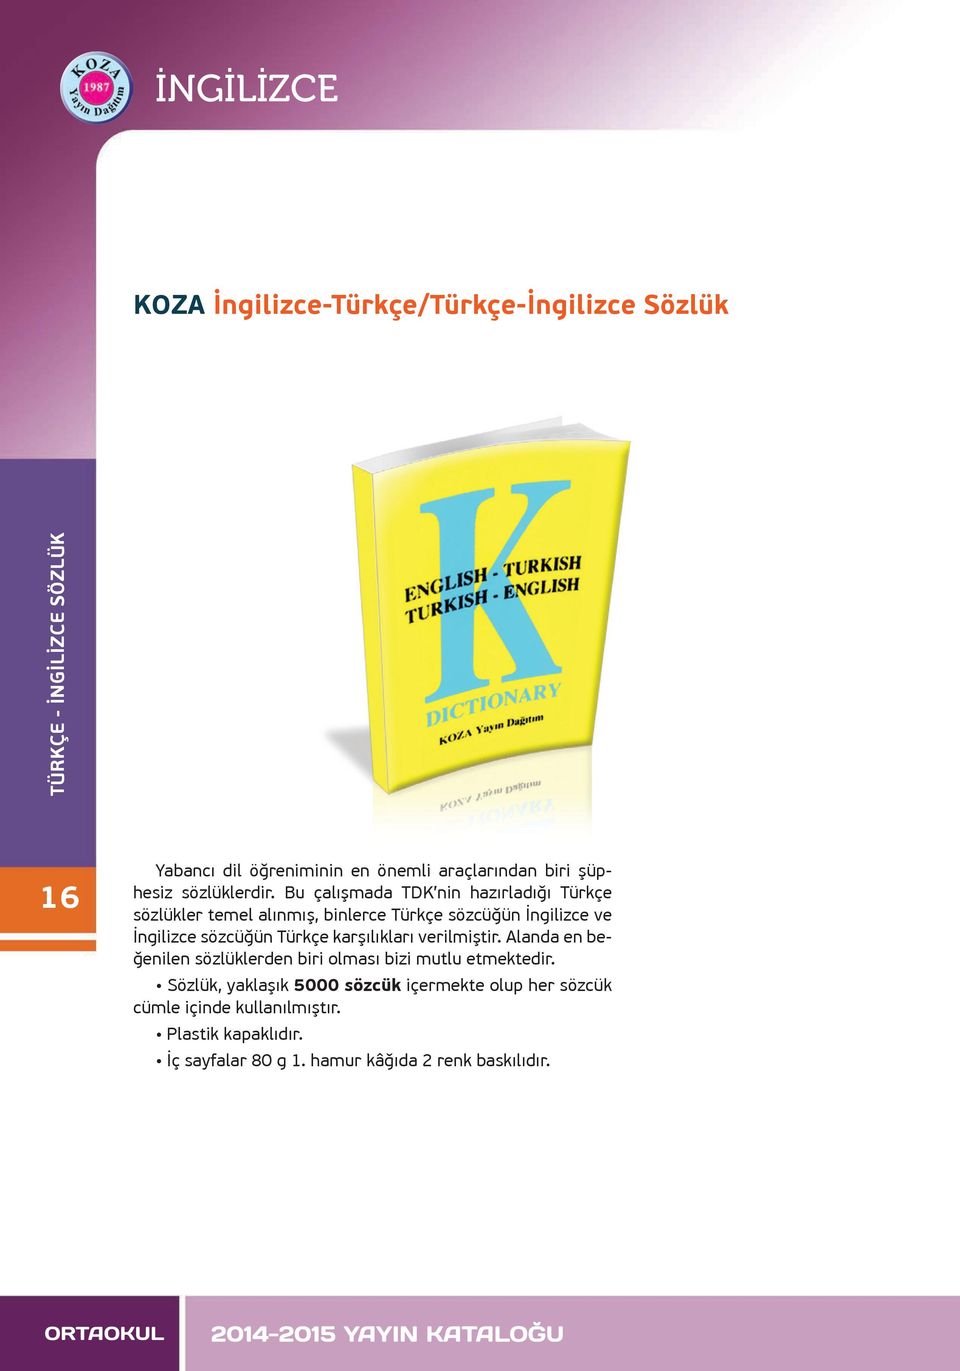 Bu çalışmada TDK nin hazırladığı Türkçe sözlükler temel alınmış, binlerce Türkçe sözcüğün İngilizce ve İngilizce sözcüğün Türkçe